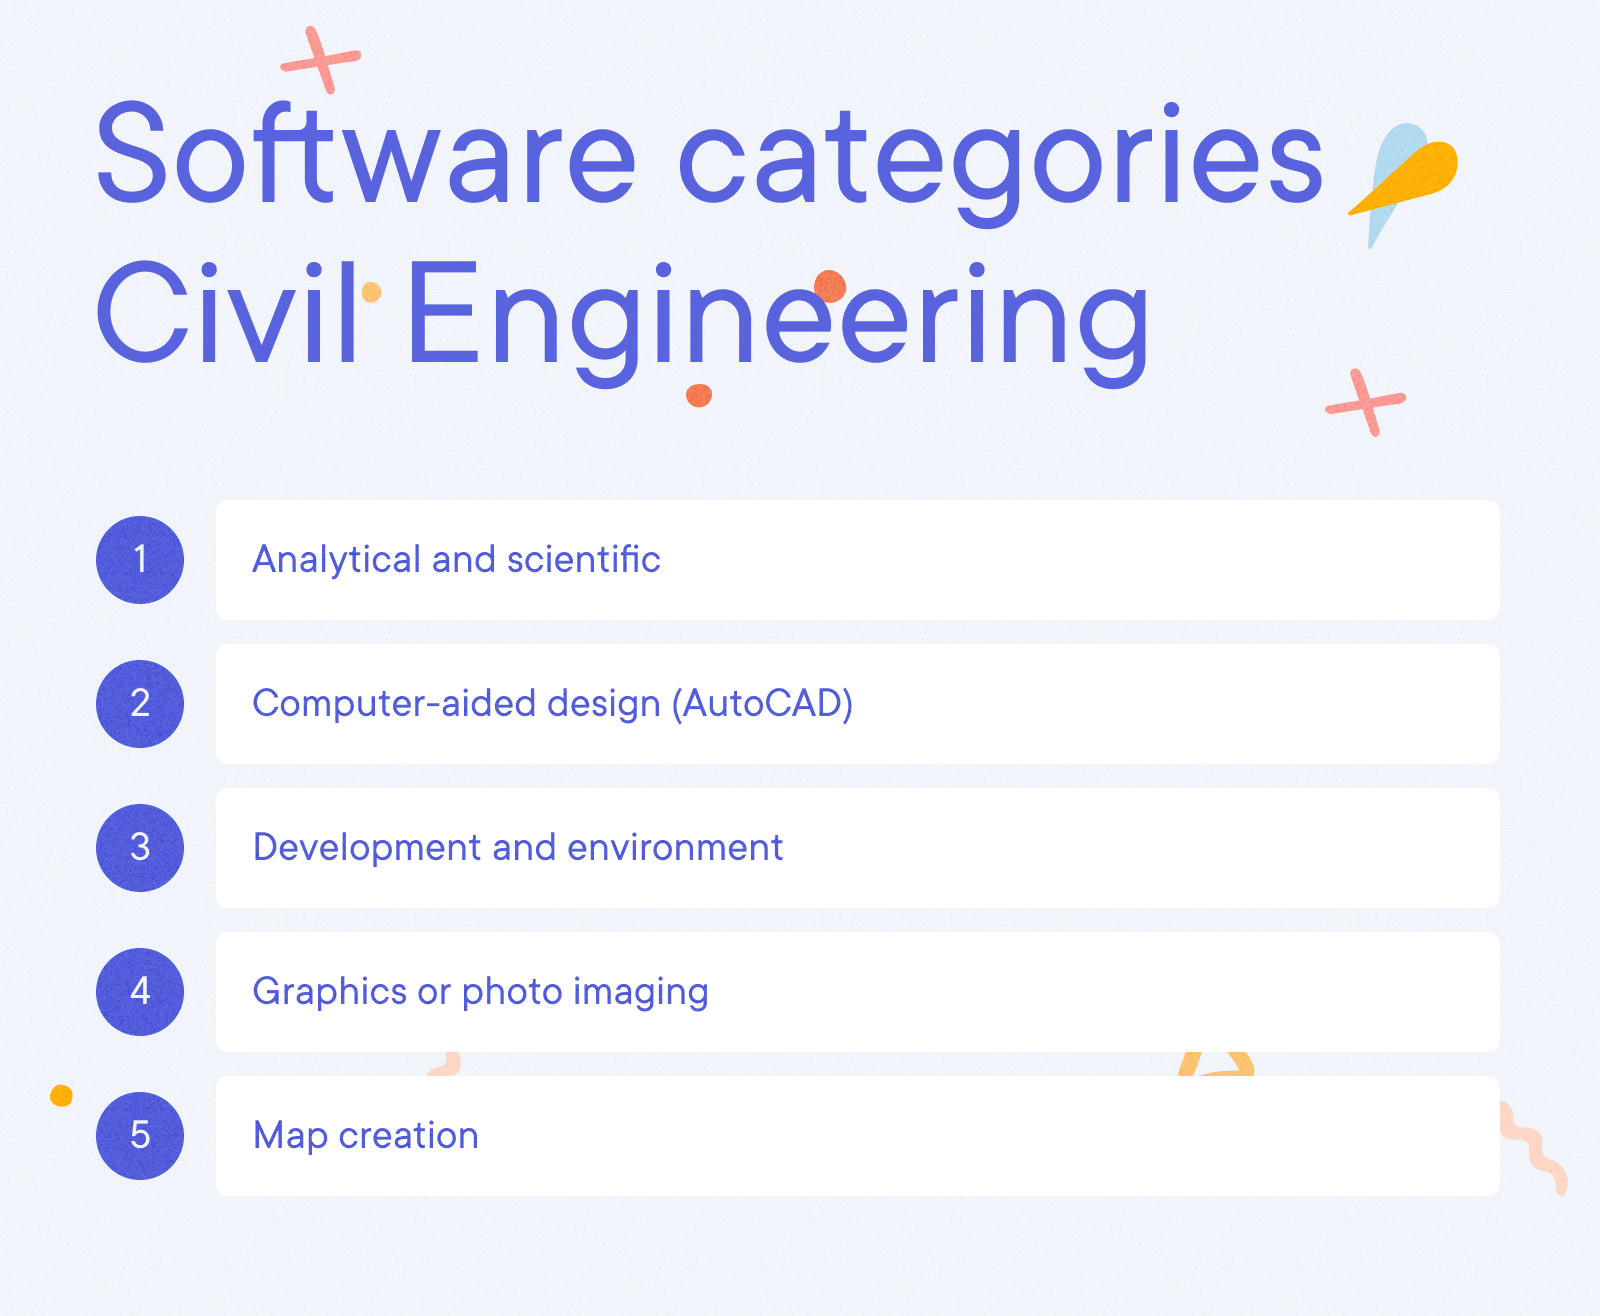 Civil Engineer Resume Example - Software categories Civil Engineering